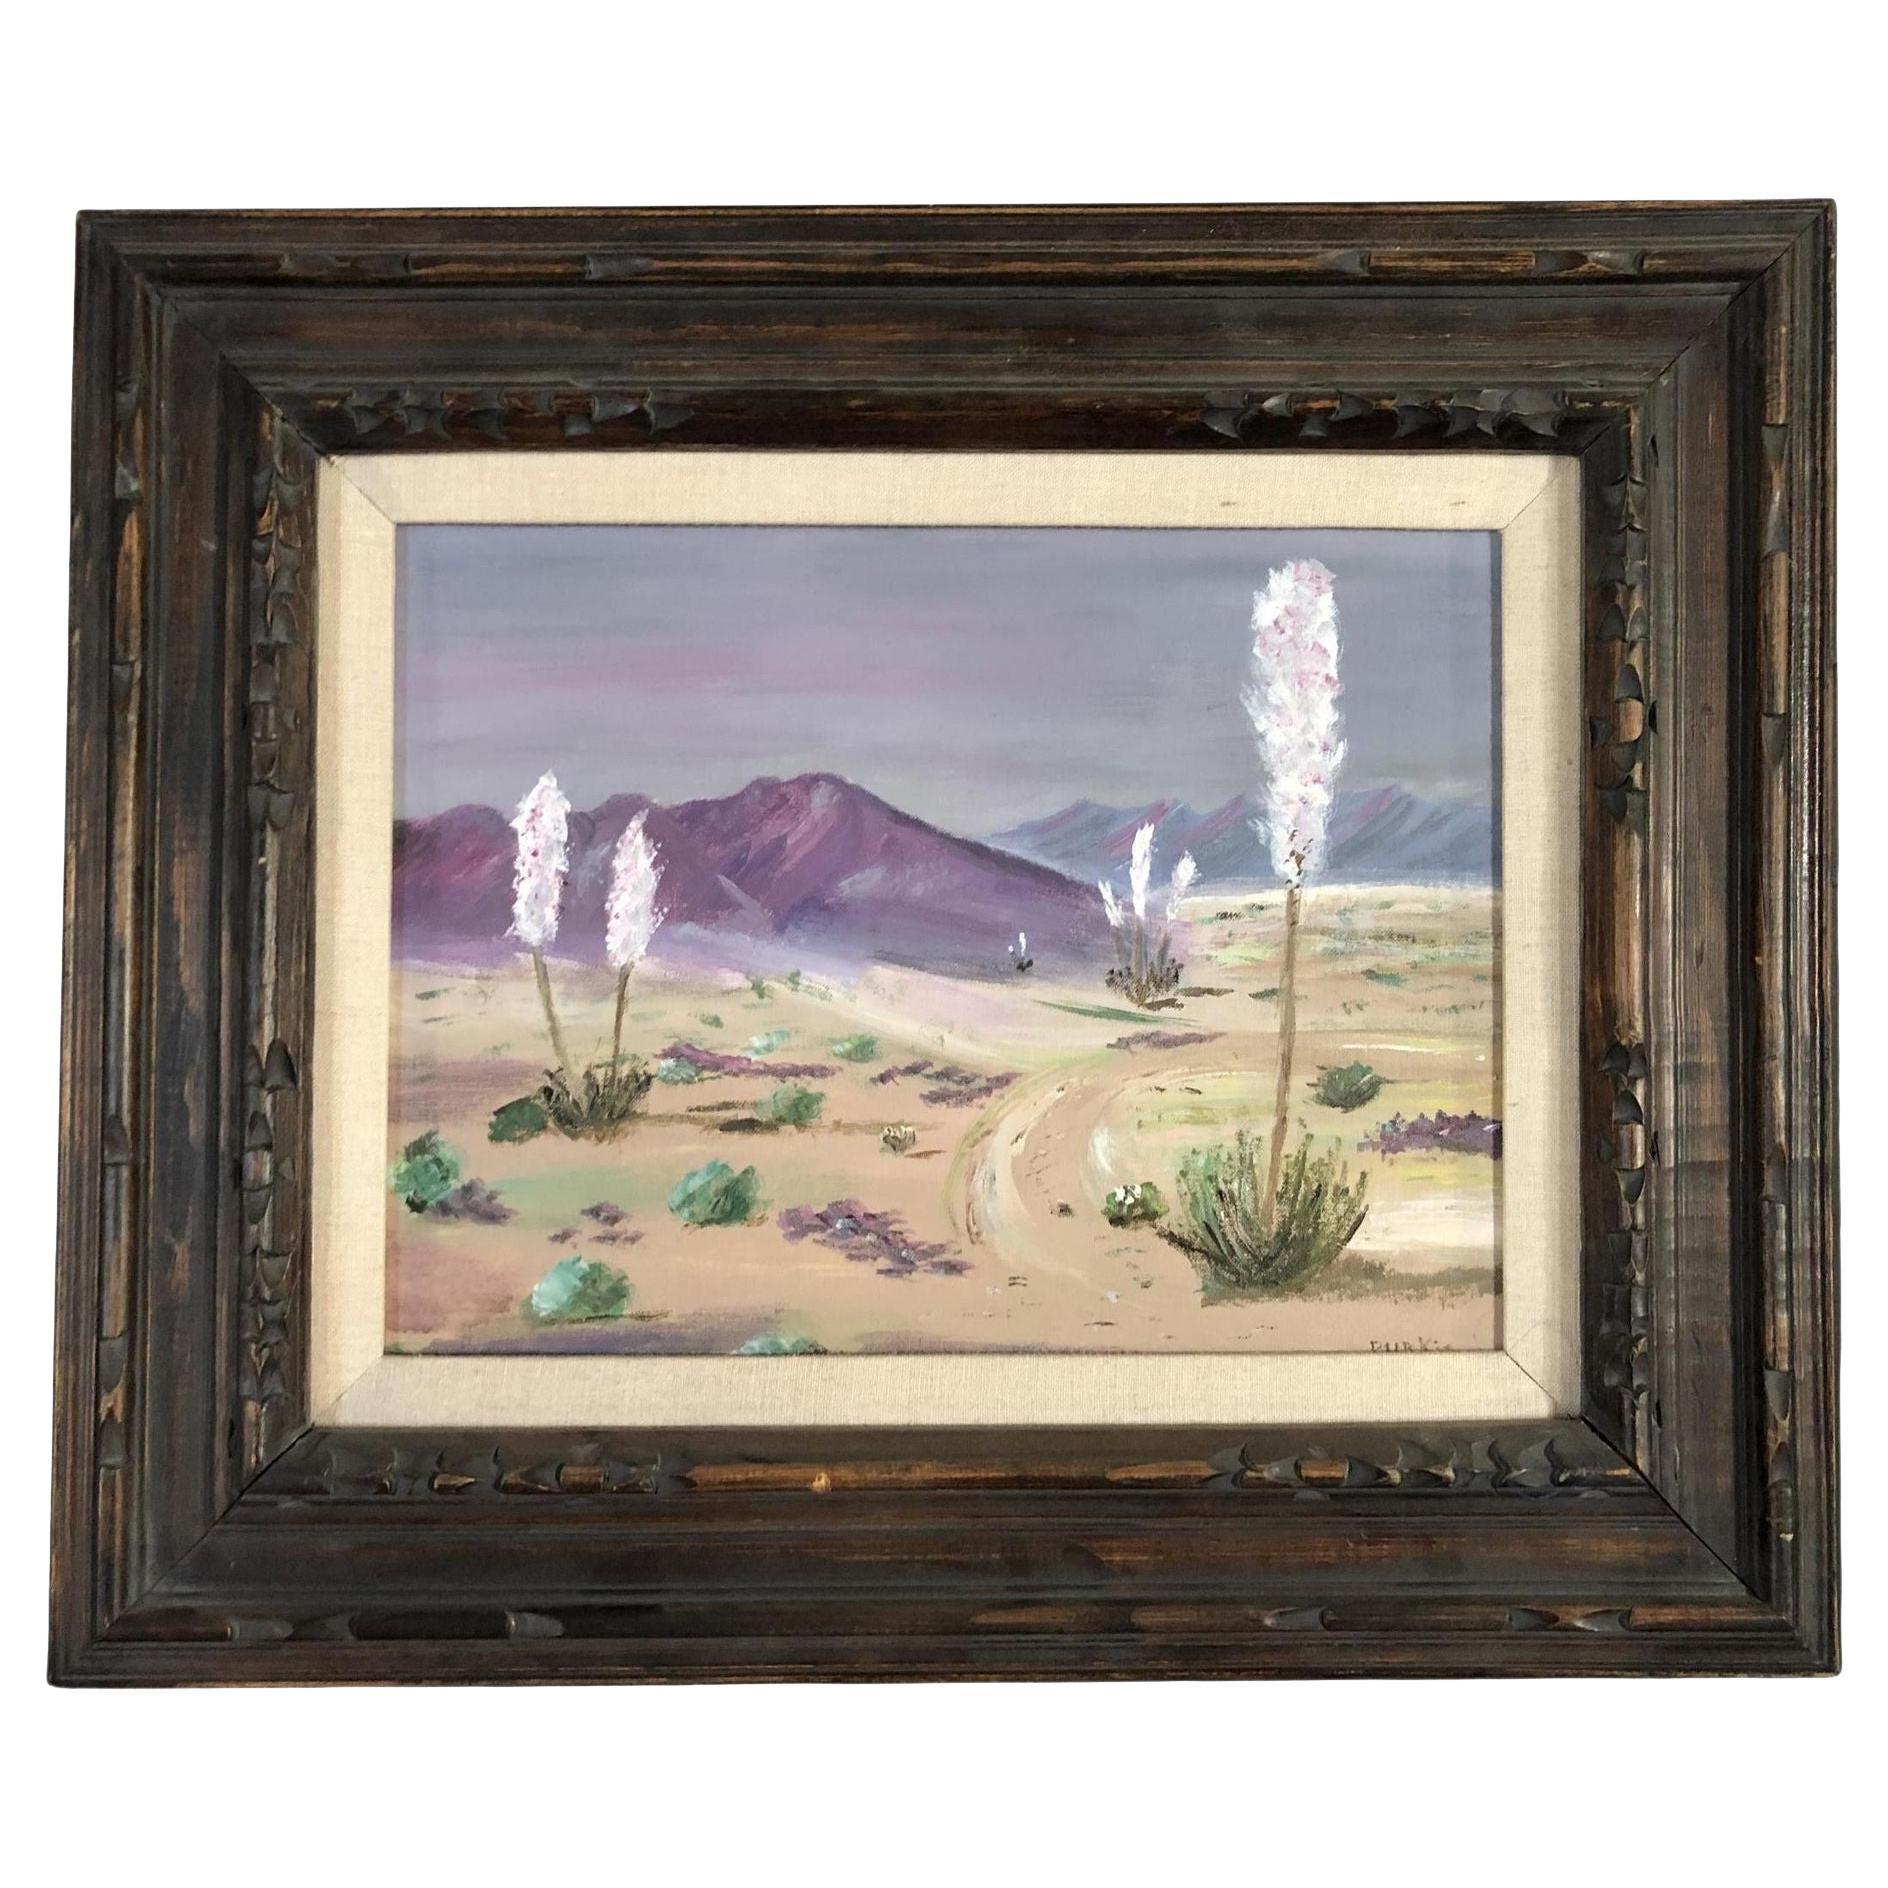 1950s Midcentury Desert Scenic Landscape Oil on Board in Original Frame, Signed